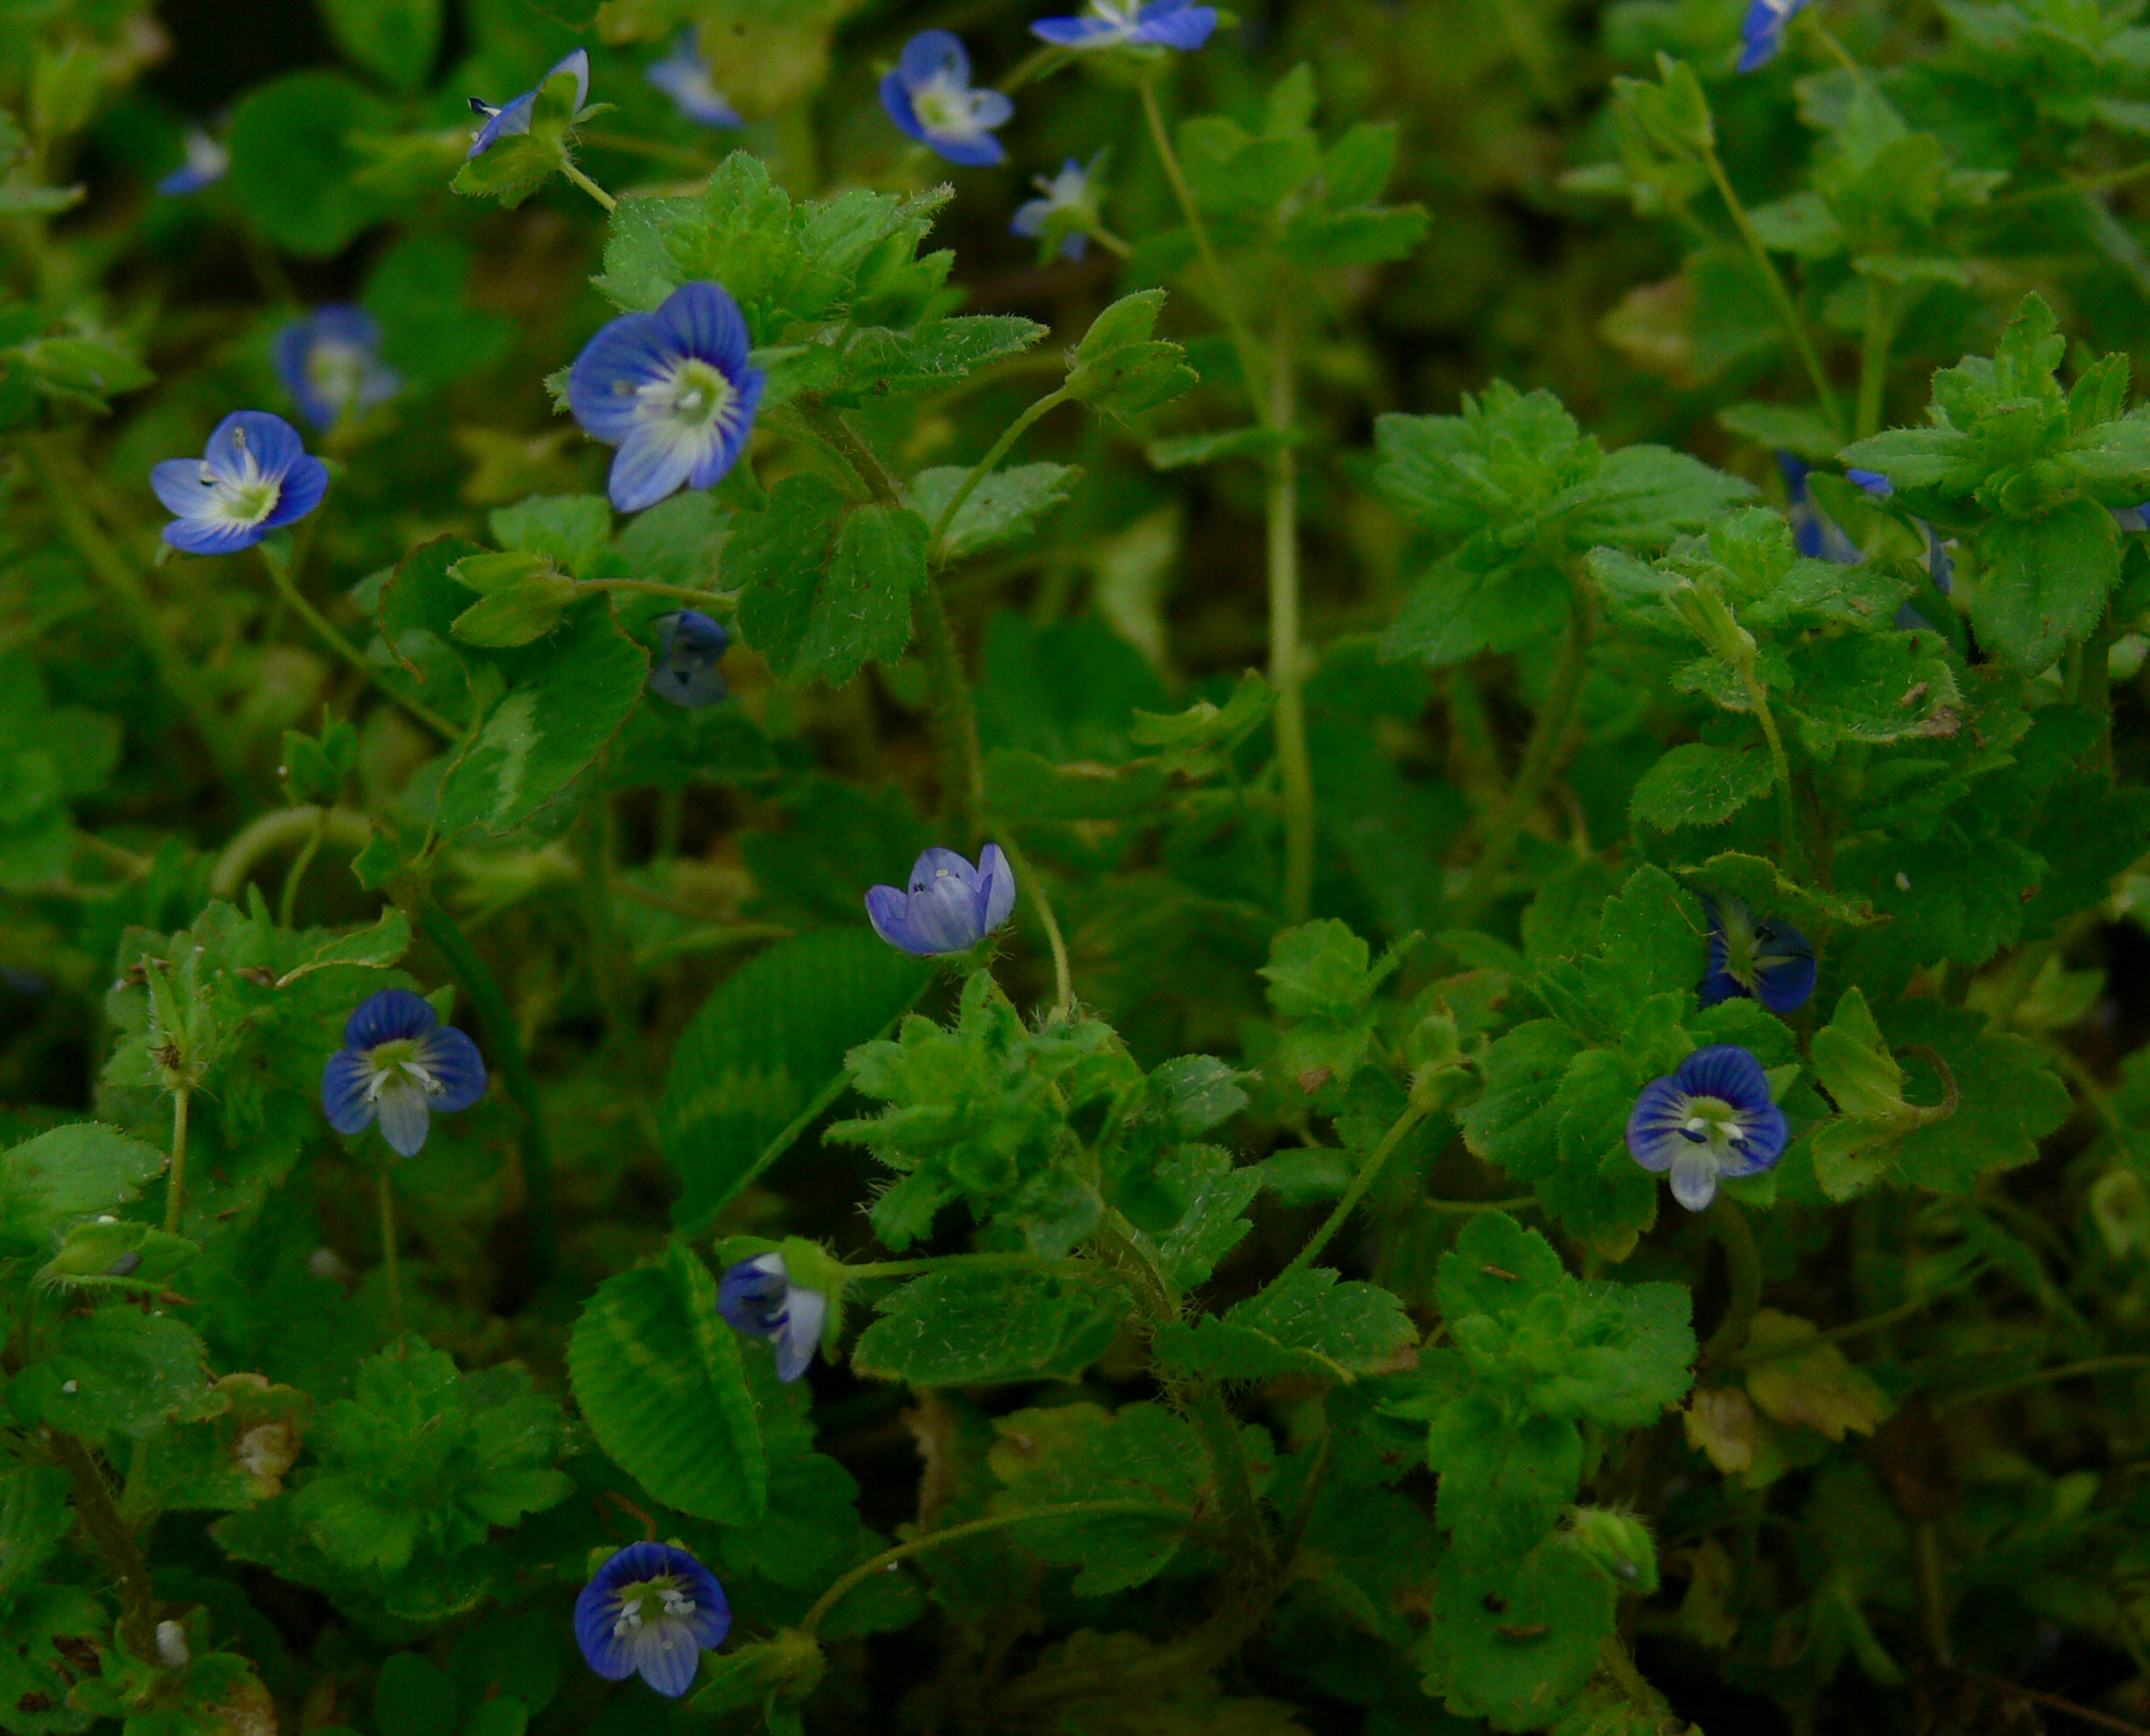 Gros plan sur les nombreuses petites fleurs bleues, placées tout près des feuilles pubescentes et dentées